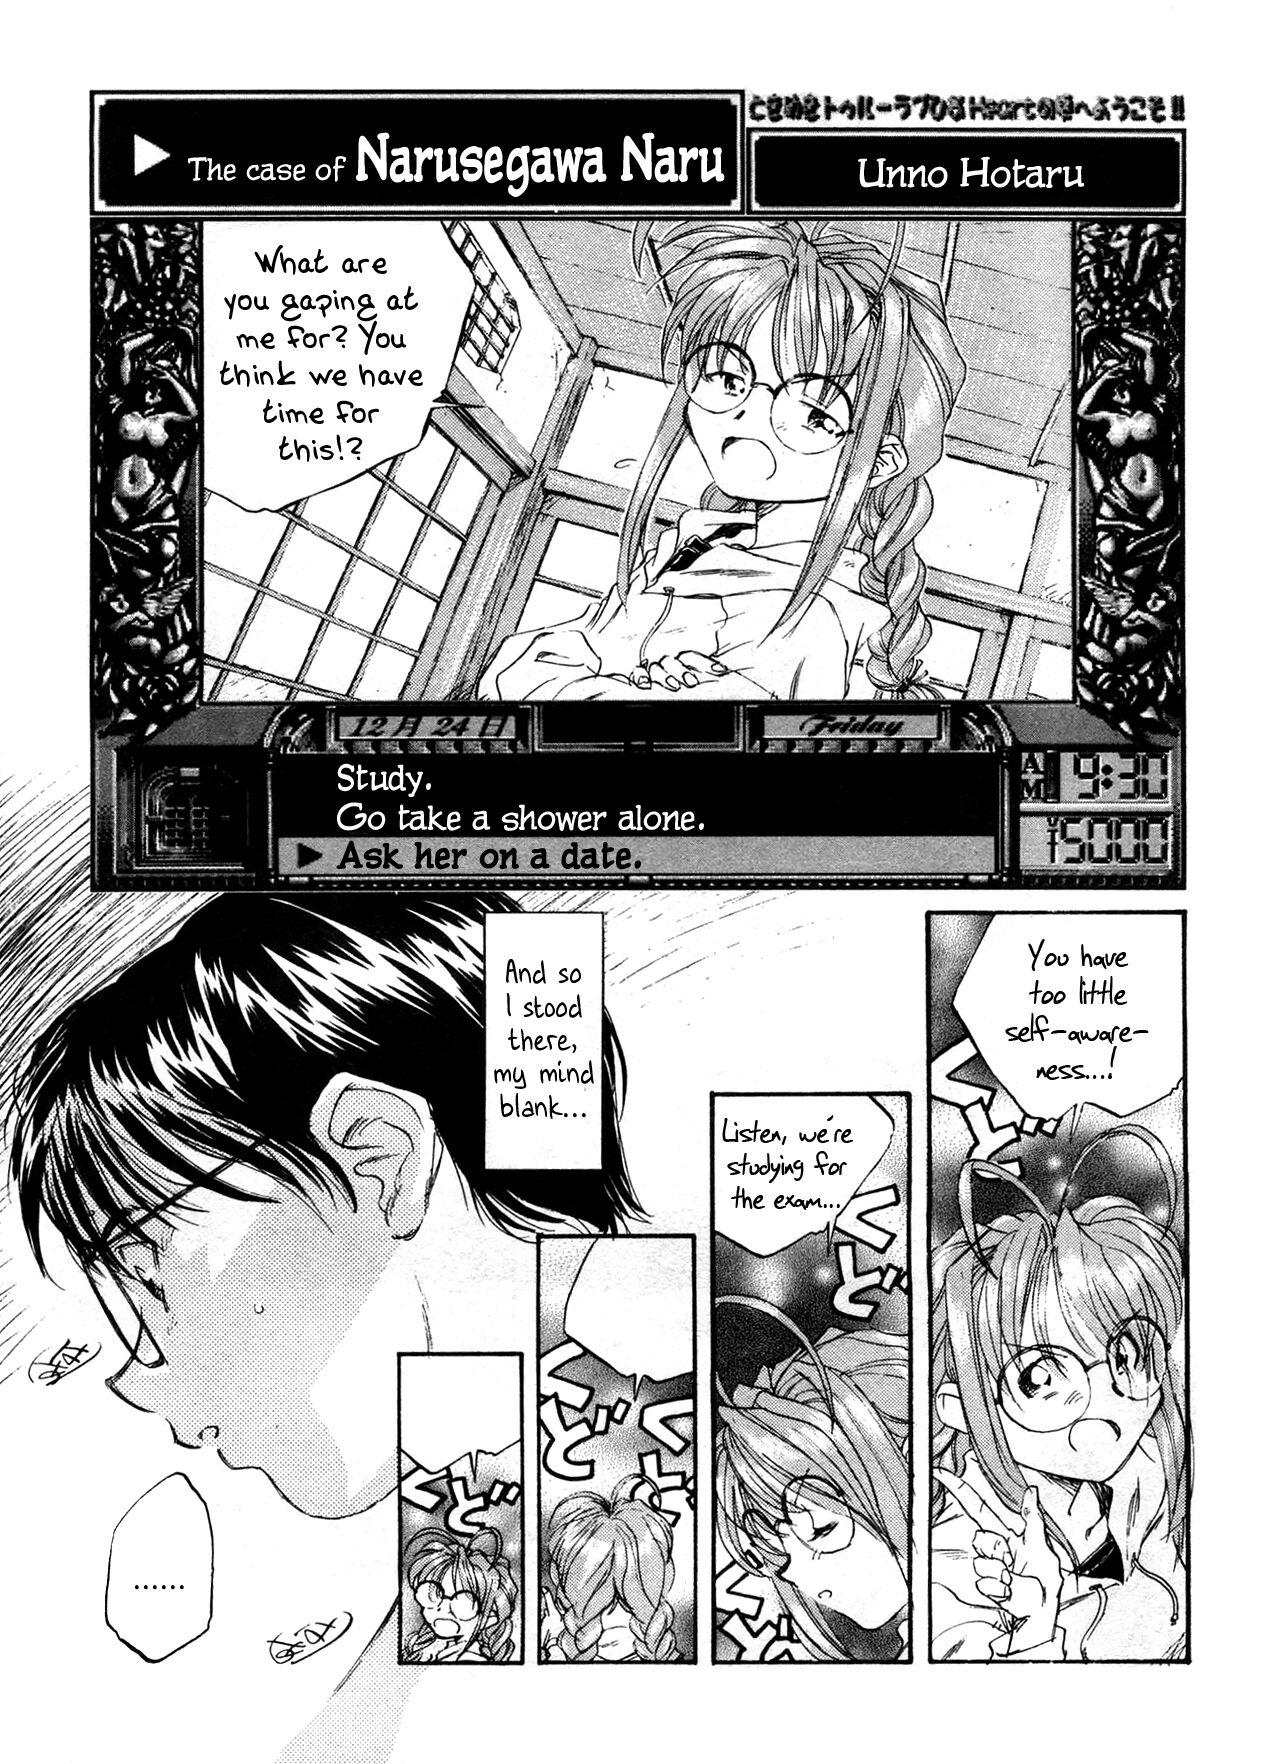 Shot Narusegawa Naru no Baai | The Case of Narusegawa Naru - Love hina Tgirls - Page 1